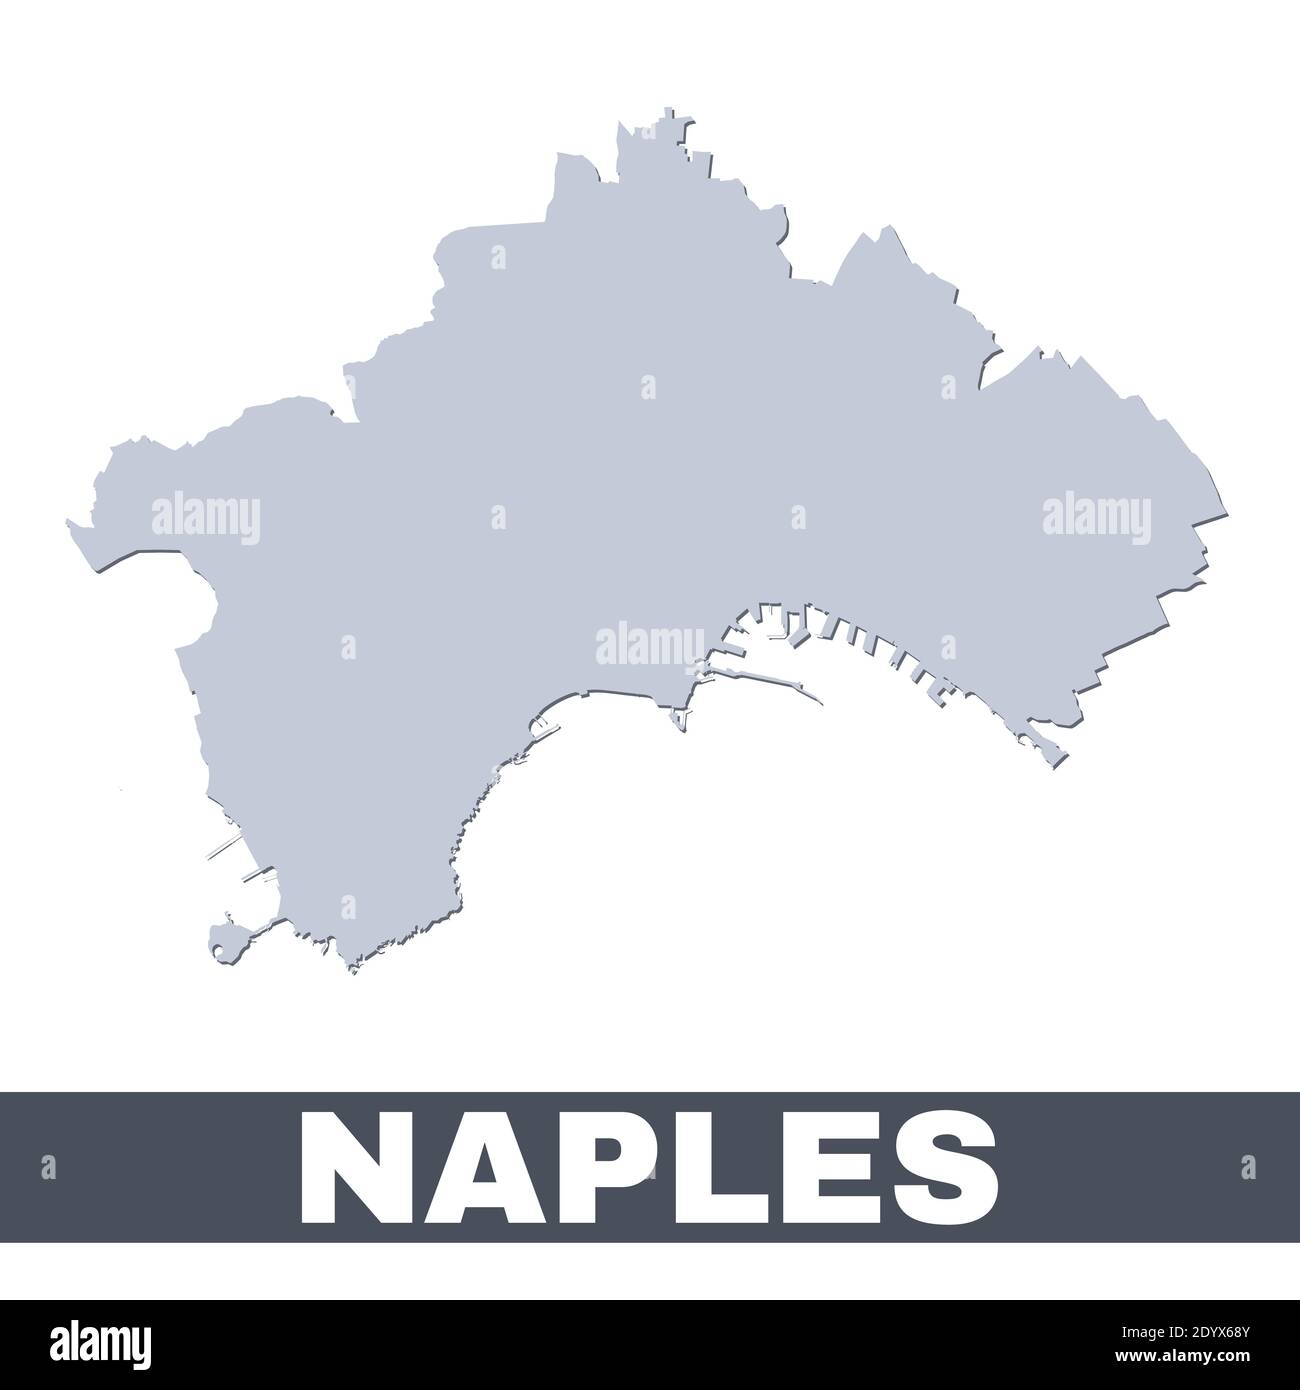 Plan de Naples. Carte vectorielle de la ville de Naples à l'intérieur de ses frontières. Gris avec ombre sur fond blanc. Illustration isolée. Illustration de Vecteur